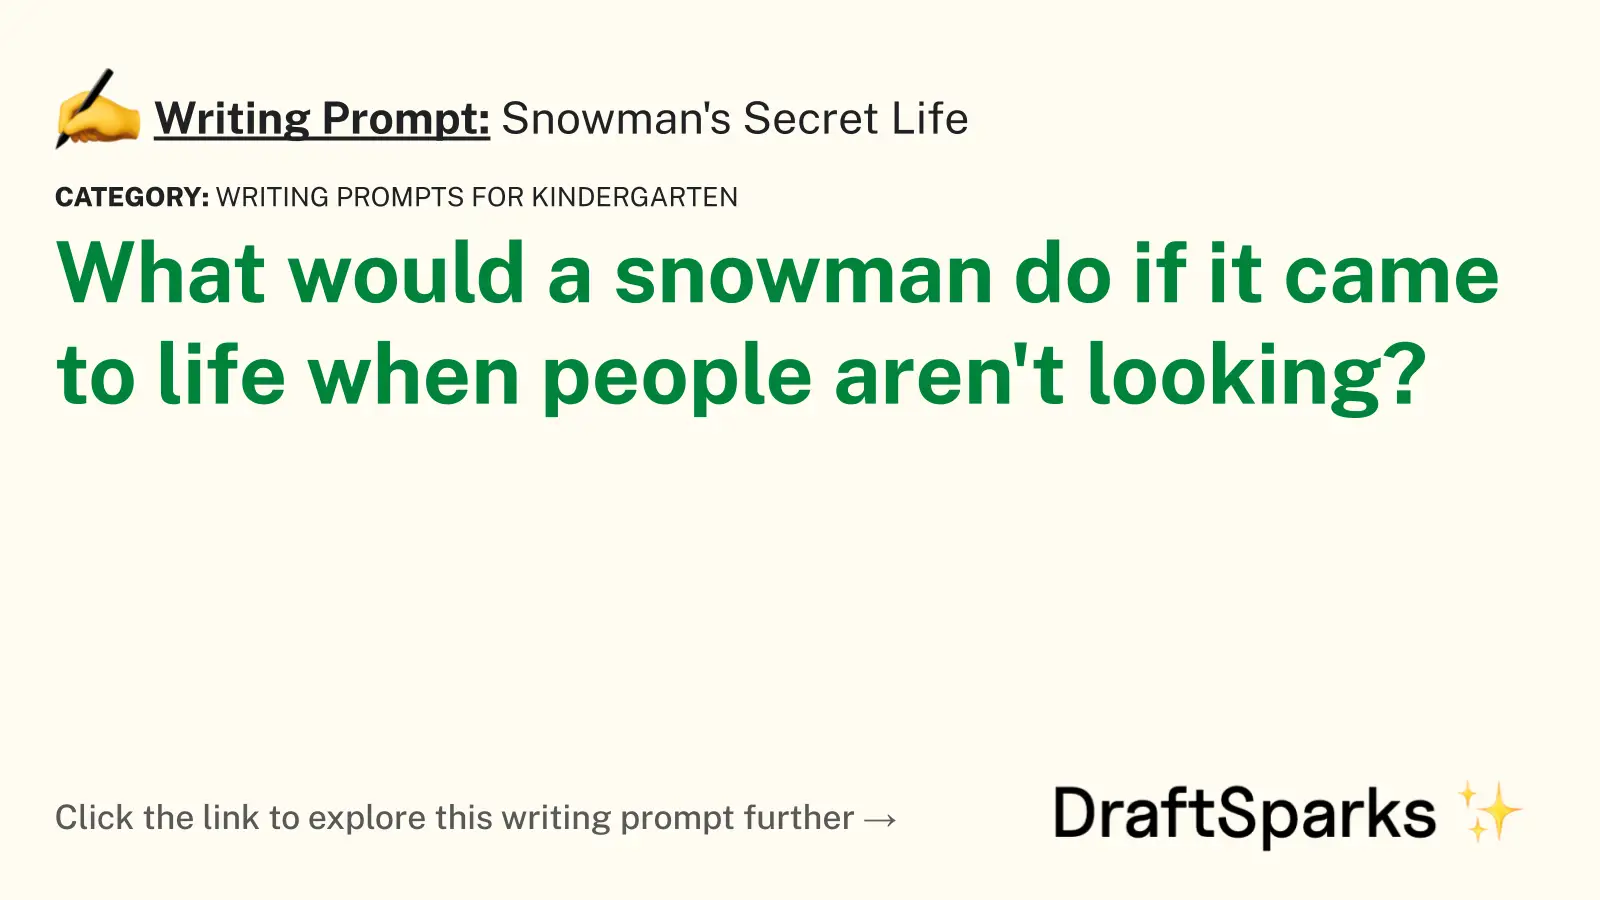 Snowman’s Secret Life